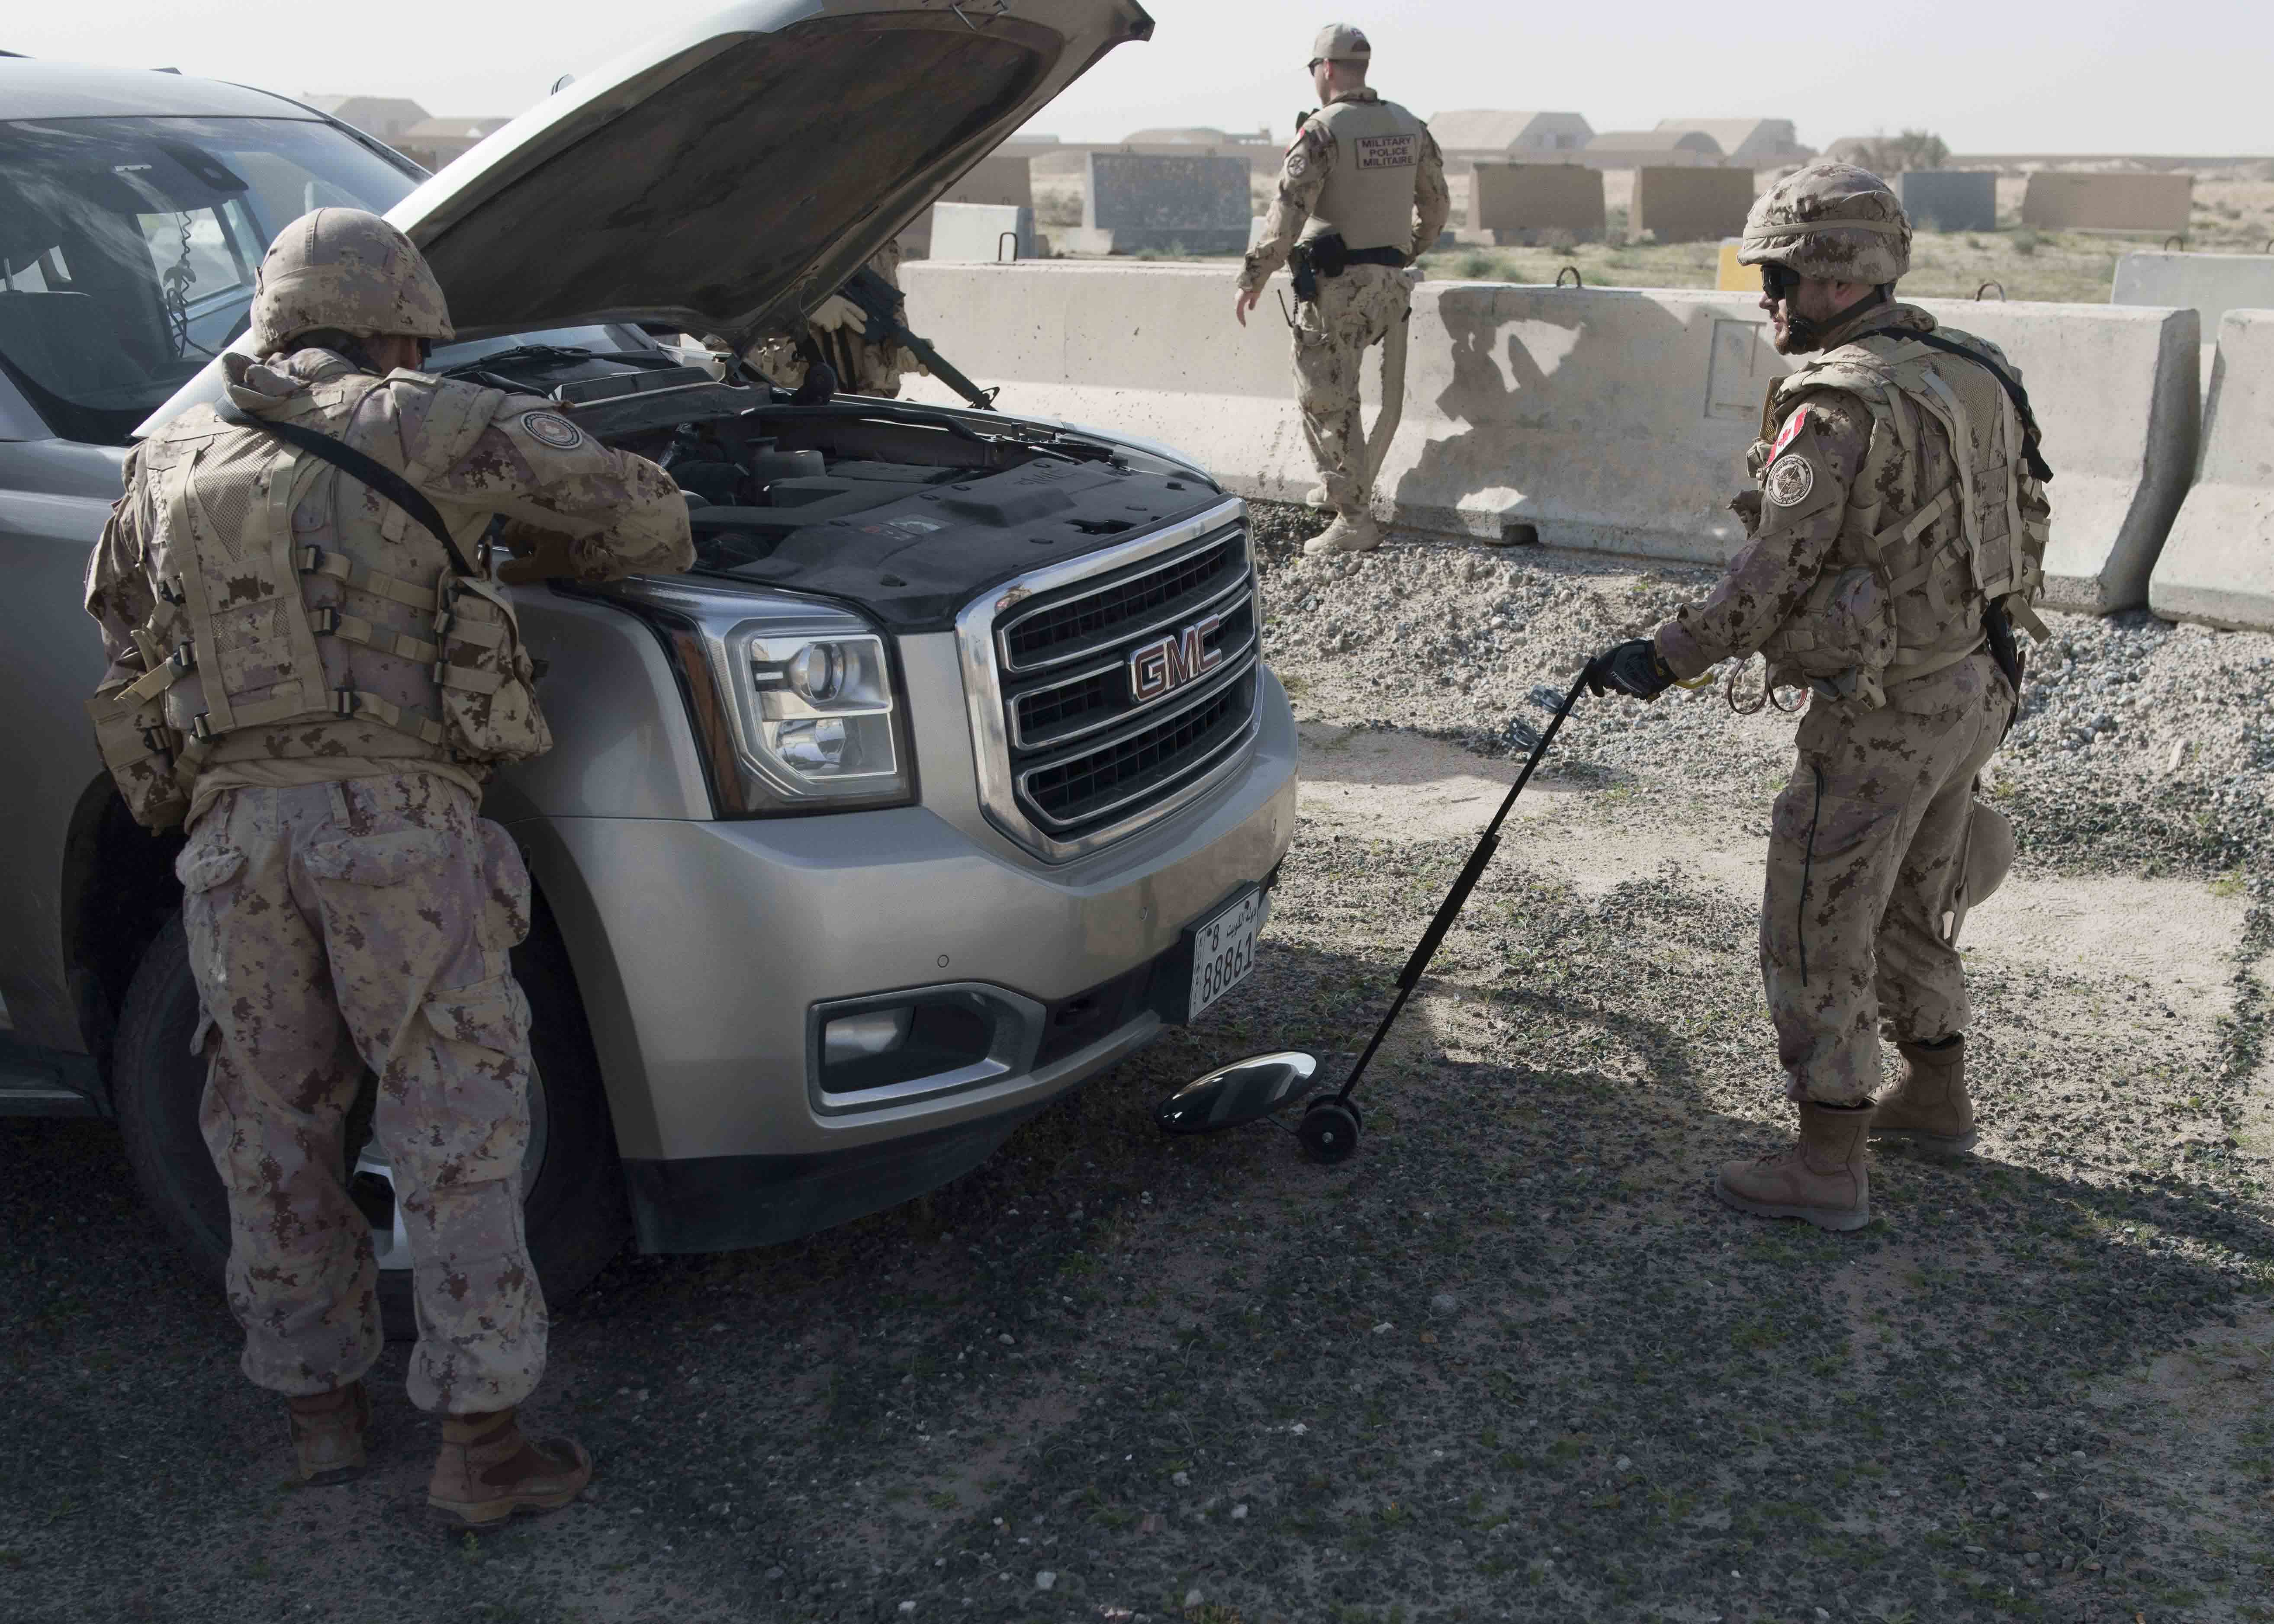 Des membres de la Force auxiliaire de sécurité  de la Force opérationnelle interarmées en Irak fouillent un véhicule suspect, durant un exercice au Camp Canada, le 21 décembre 2018. Photo : Services d’imagerie de l’Op IMPACT